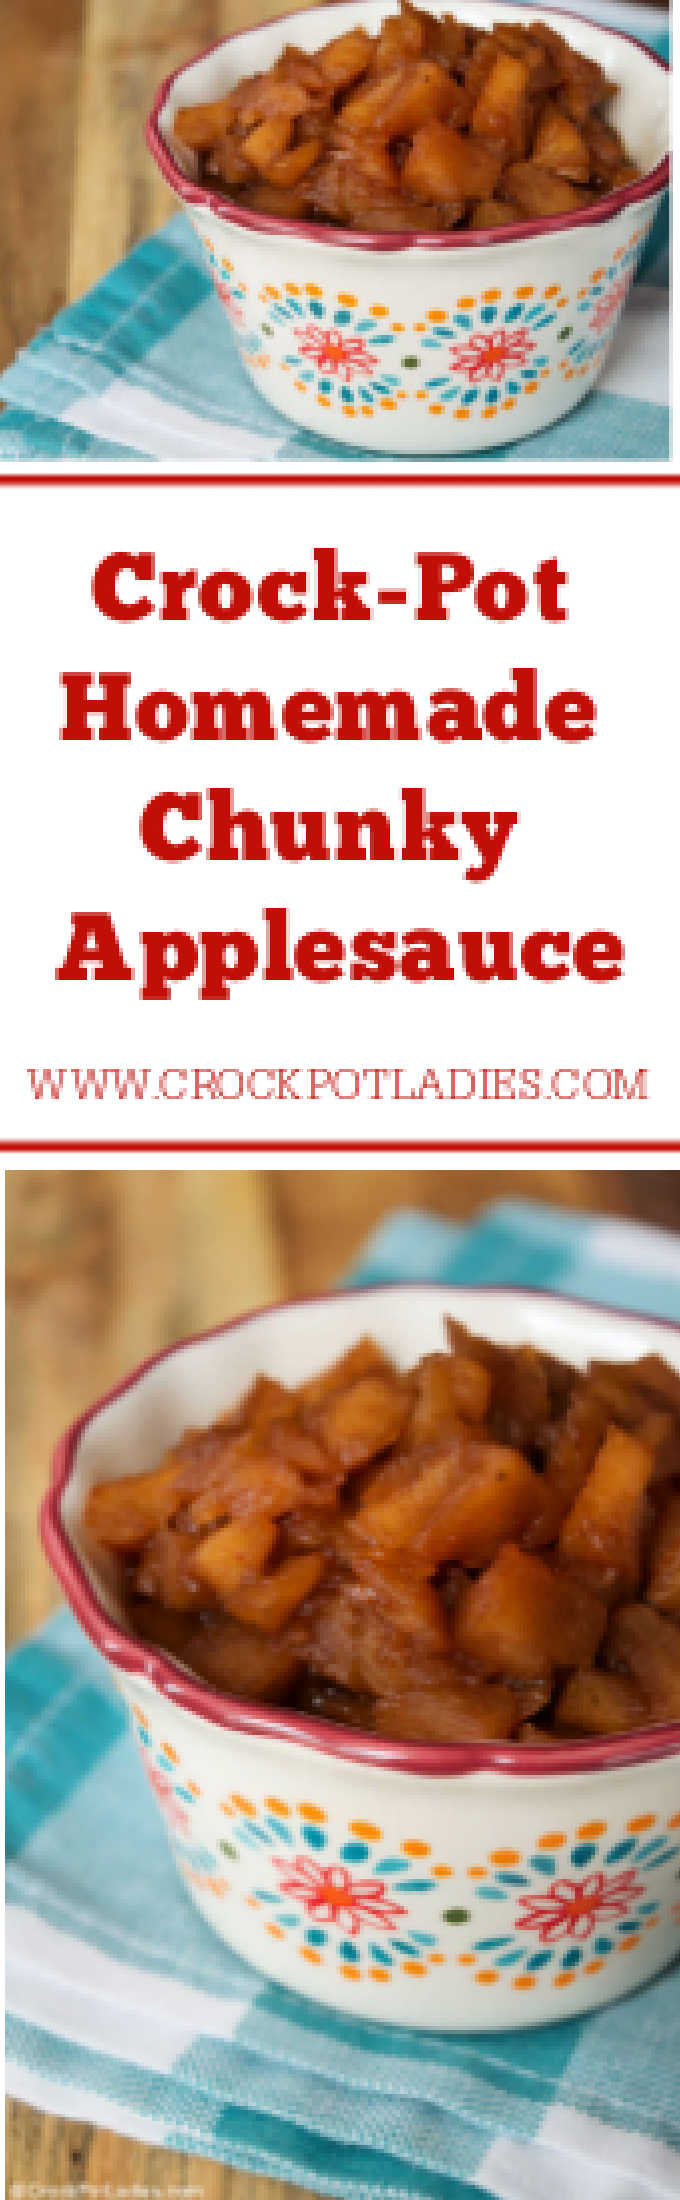 Crock-Pot Homemade Chunky Applesauce